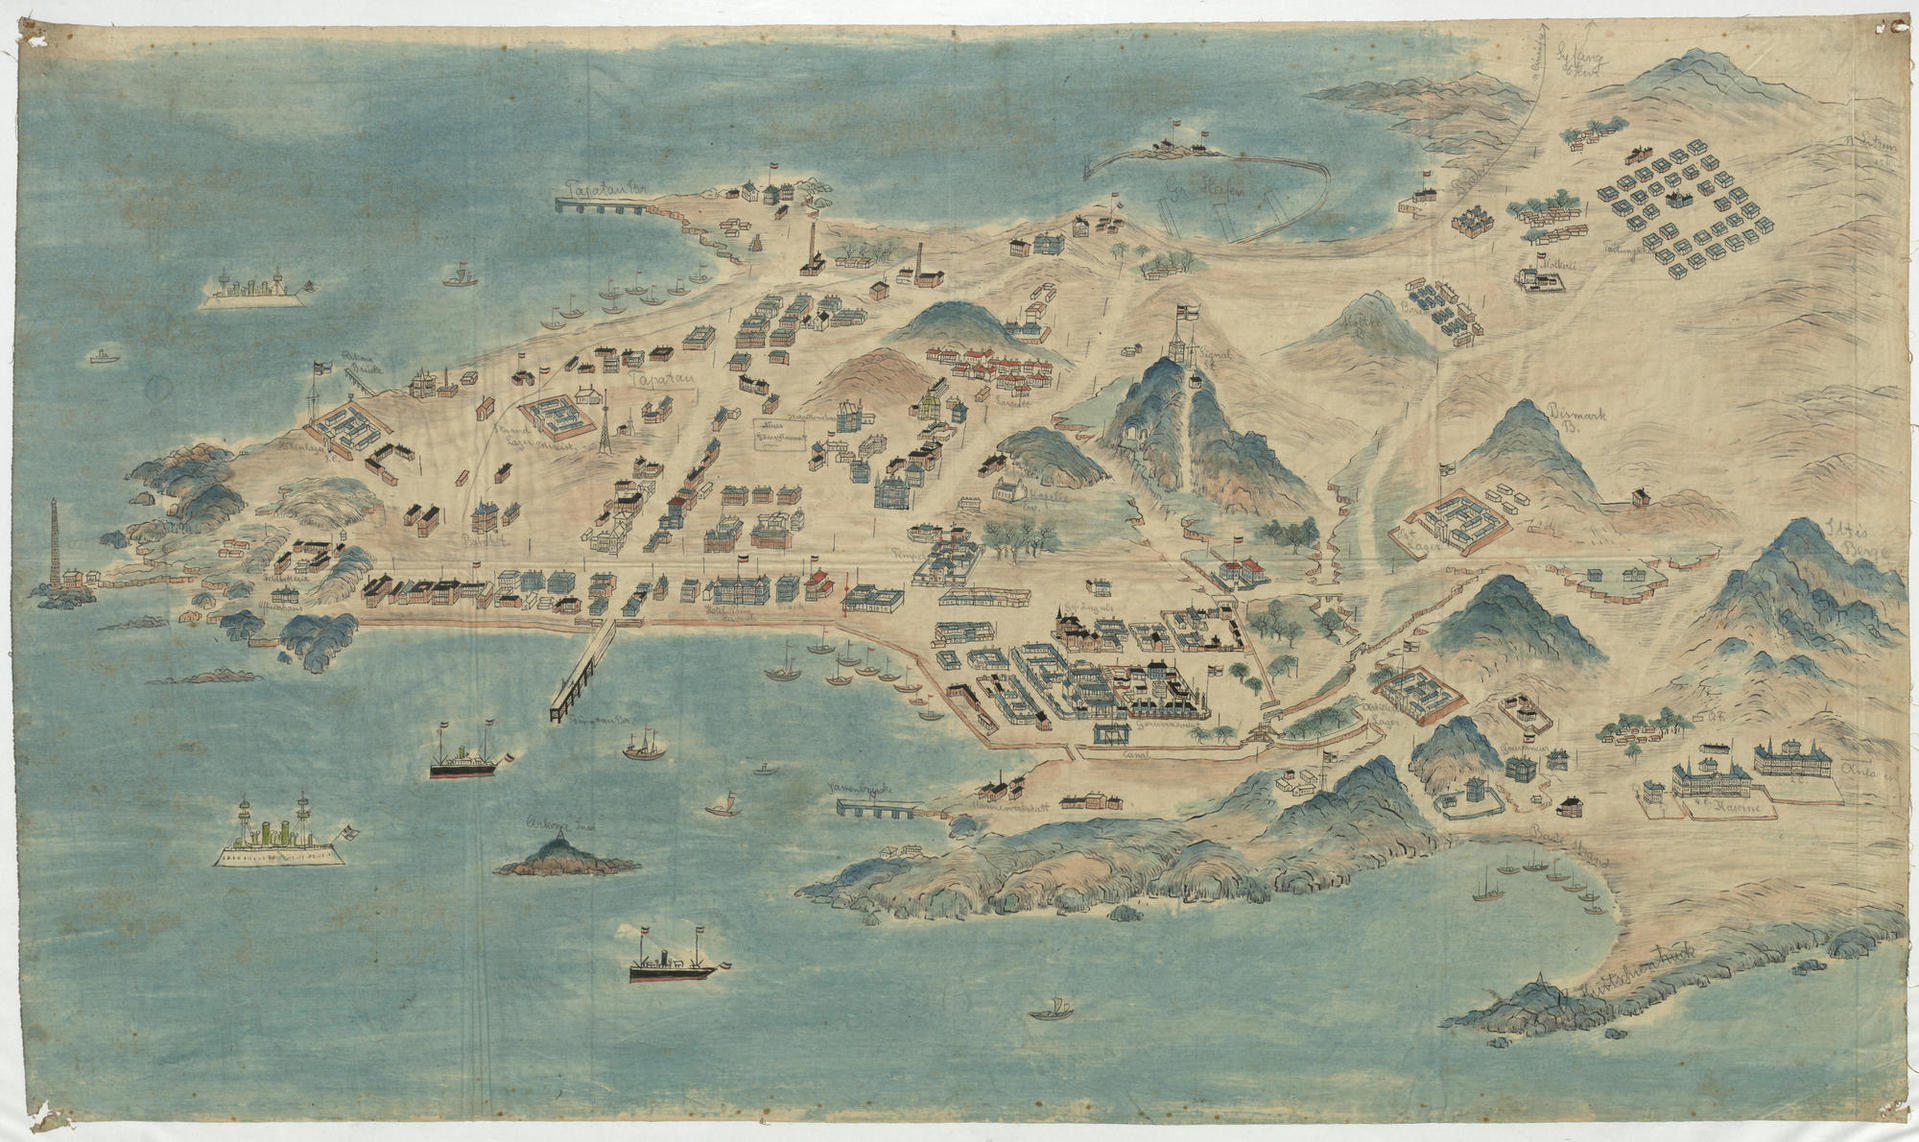 120年前的青岛鸟瞰地图首次展示,栈桥,小青岛,团岛…原来是这个模样图片